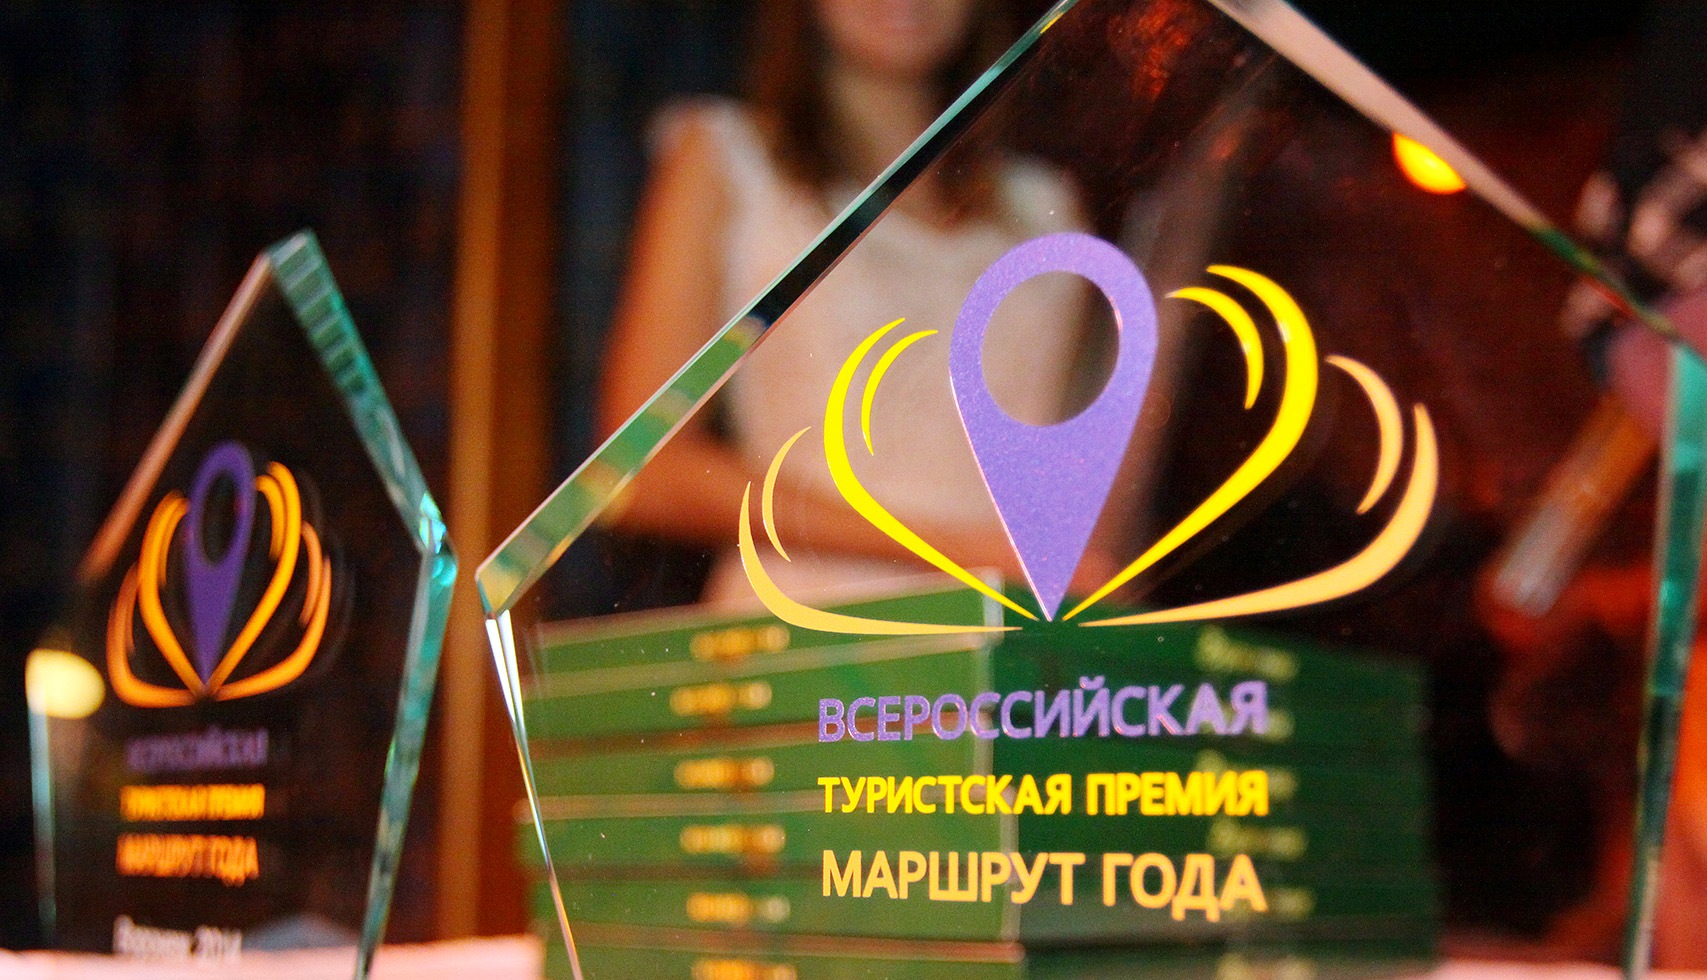 Белгородская область стала финалистом окружного этапа премии «Маршрут года».